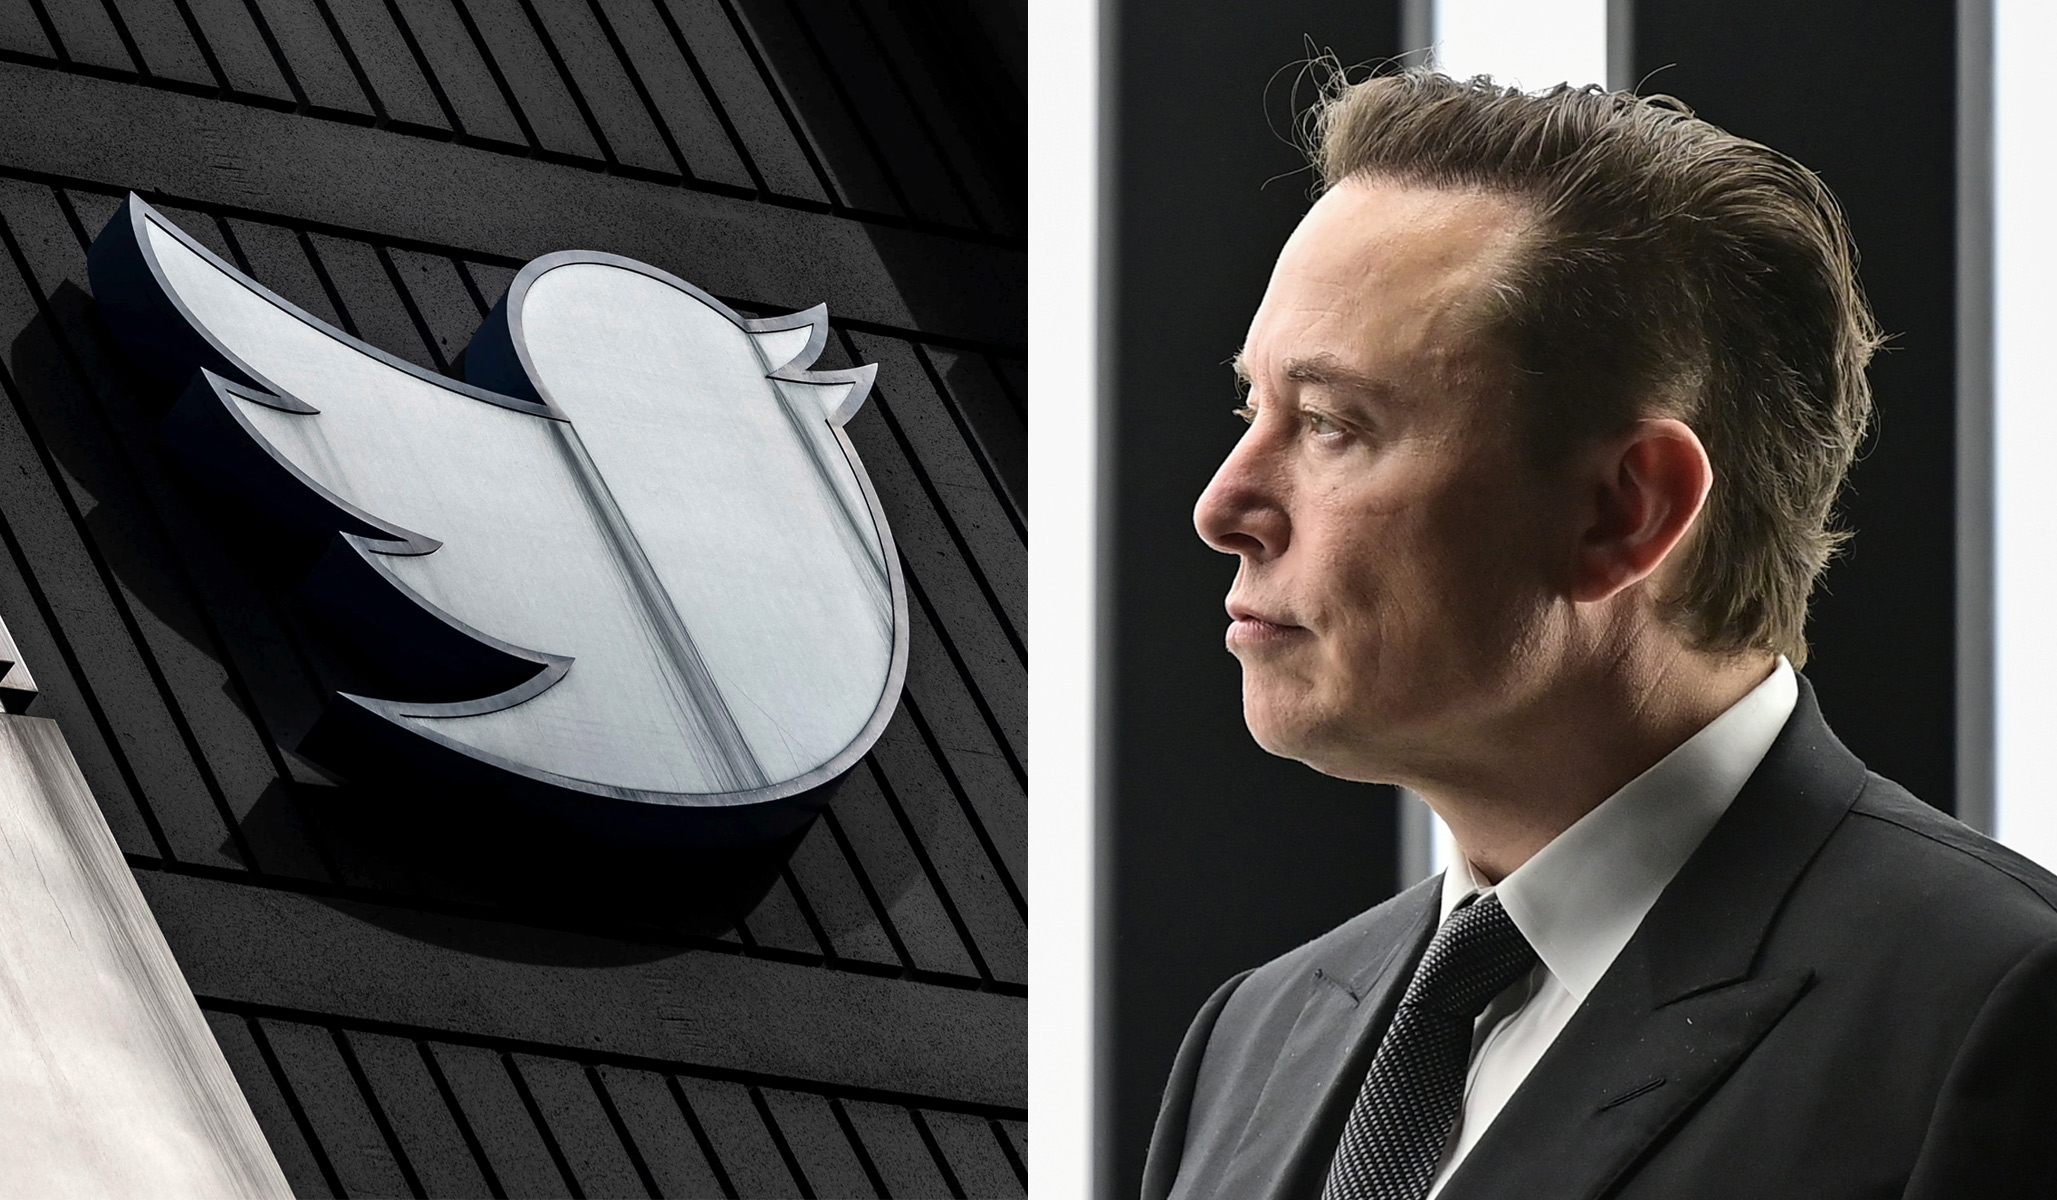 Elon Musk Disbands Twitter Board, Appoints Himself 'Sole Director'